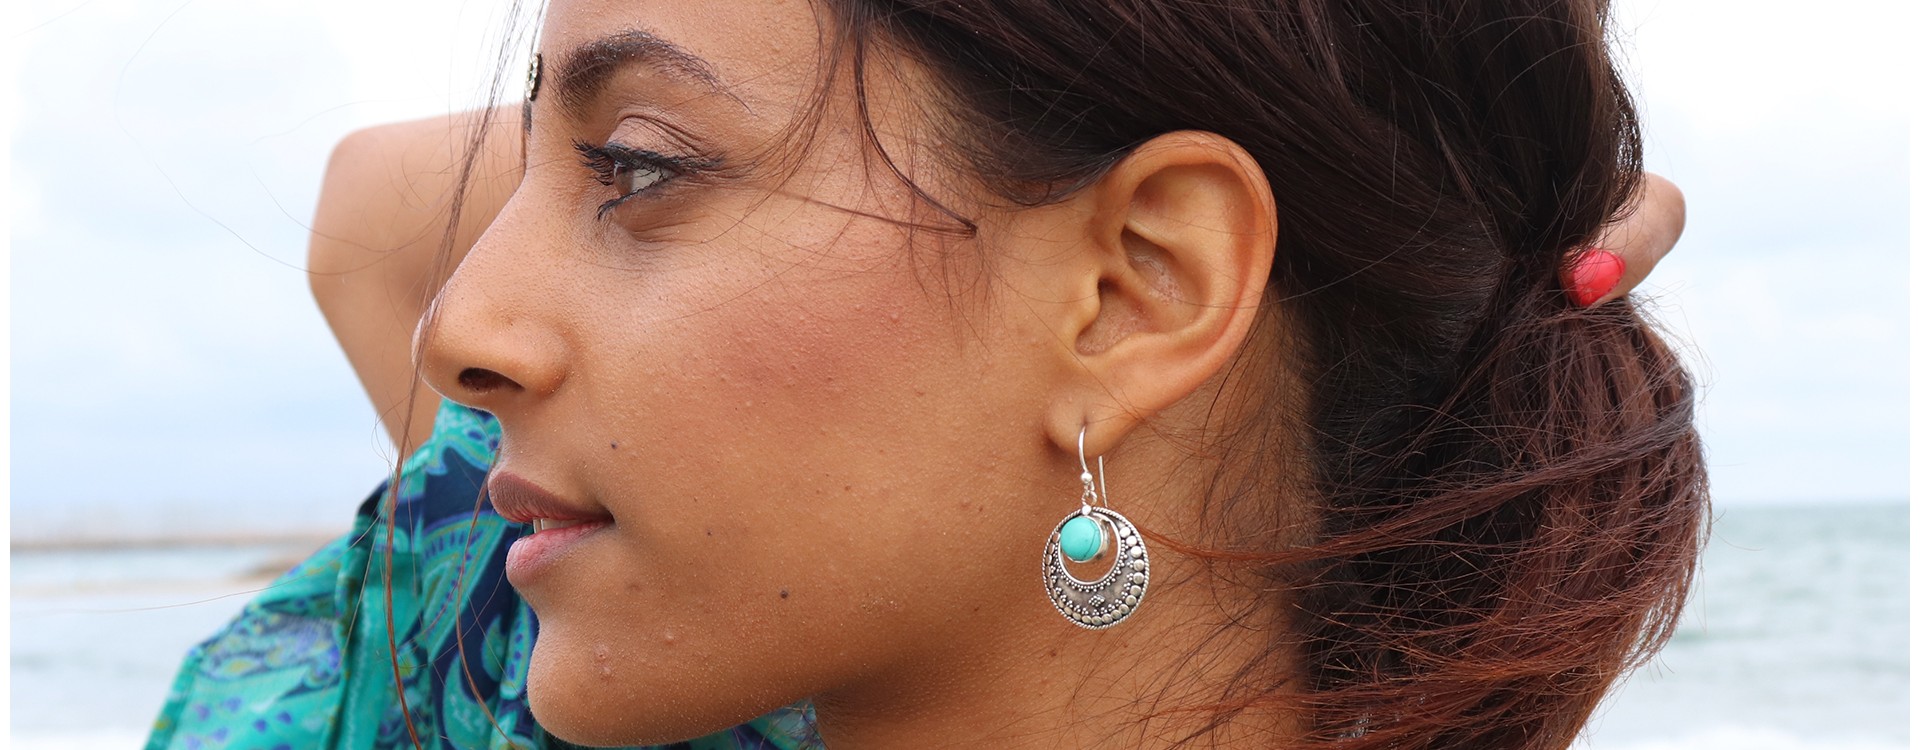 Boucles d'oreille argent - Mosaik indiens